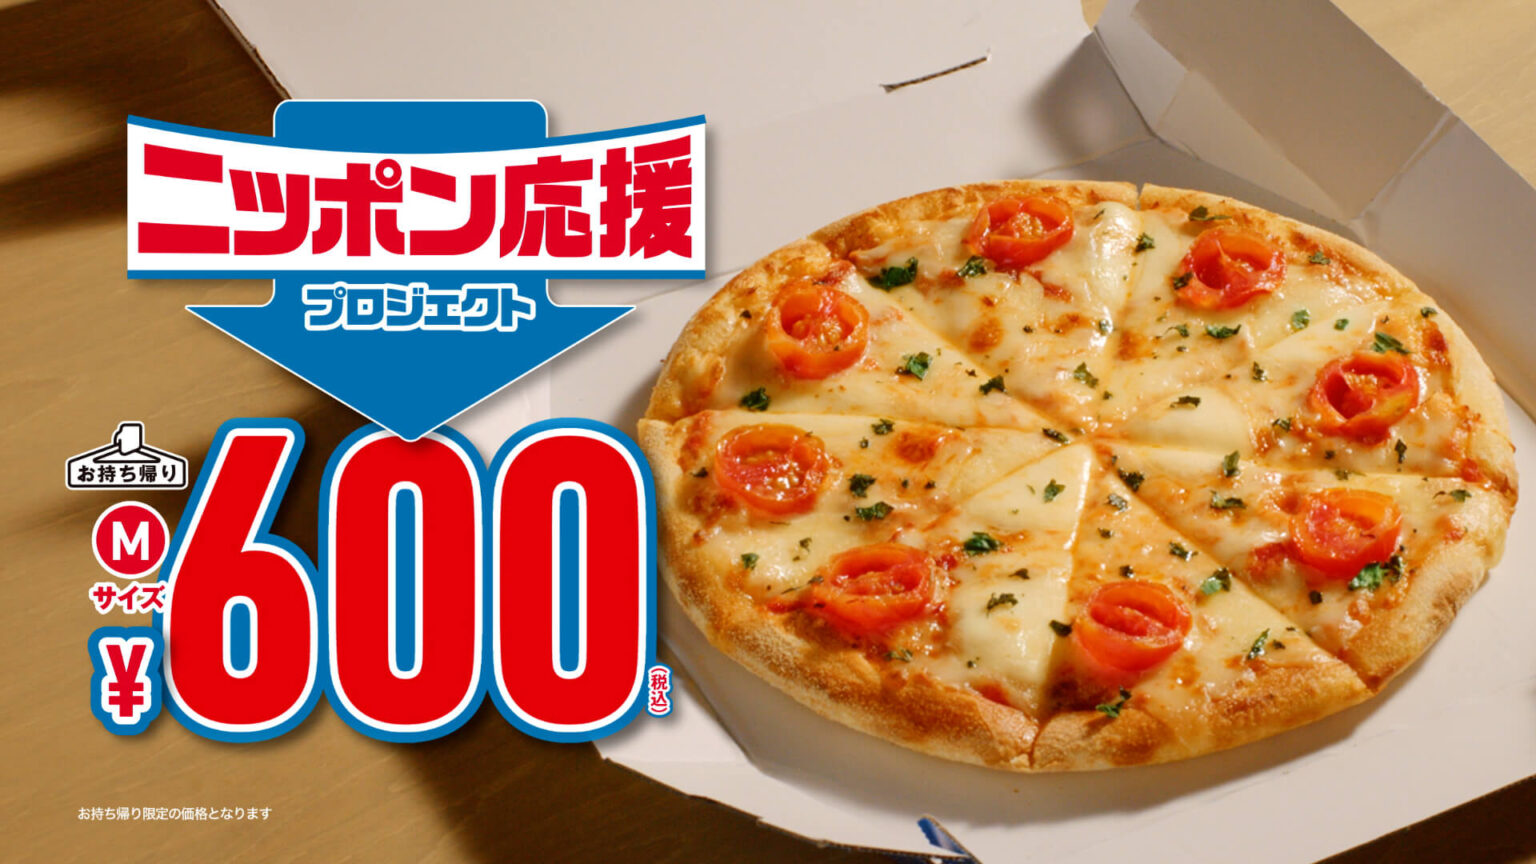 ドミノピザ-600円-アイキャッチ